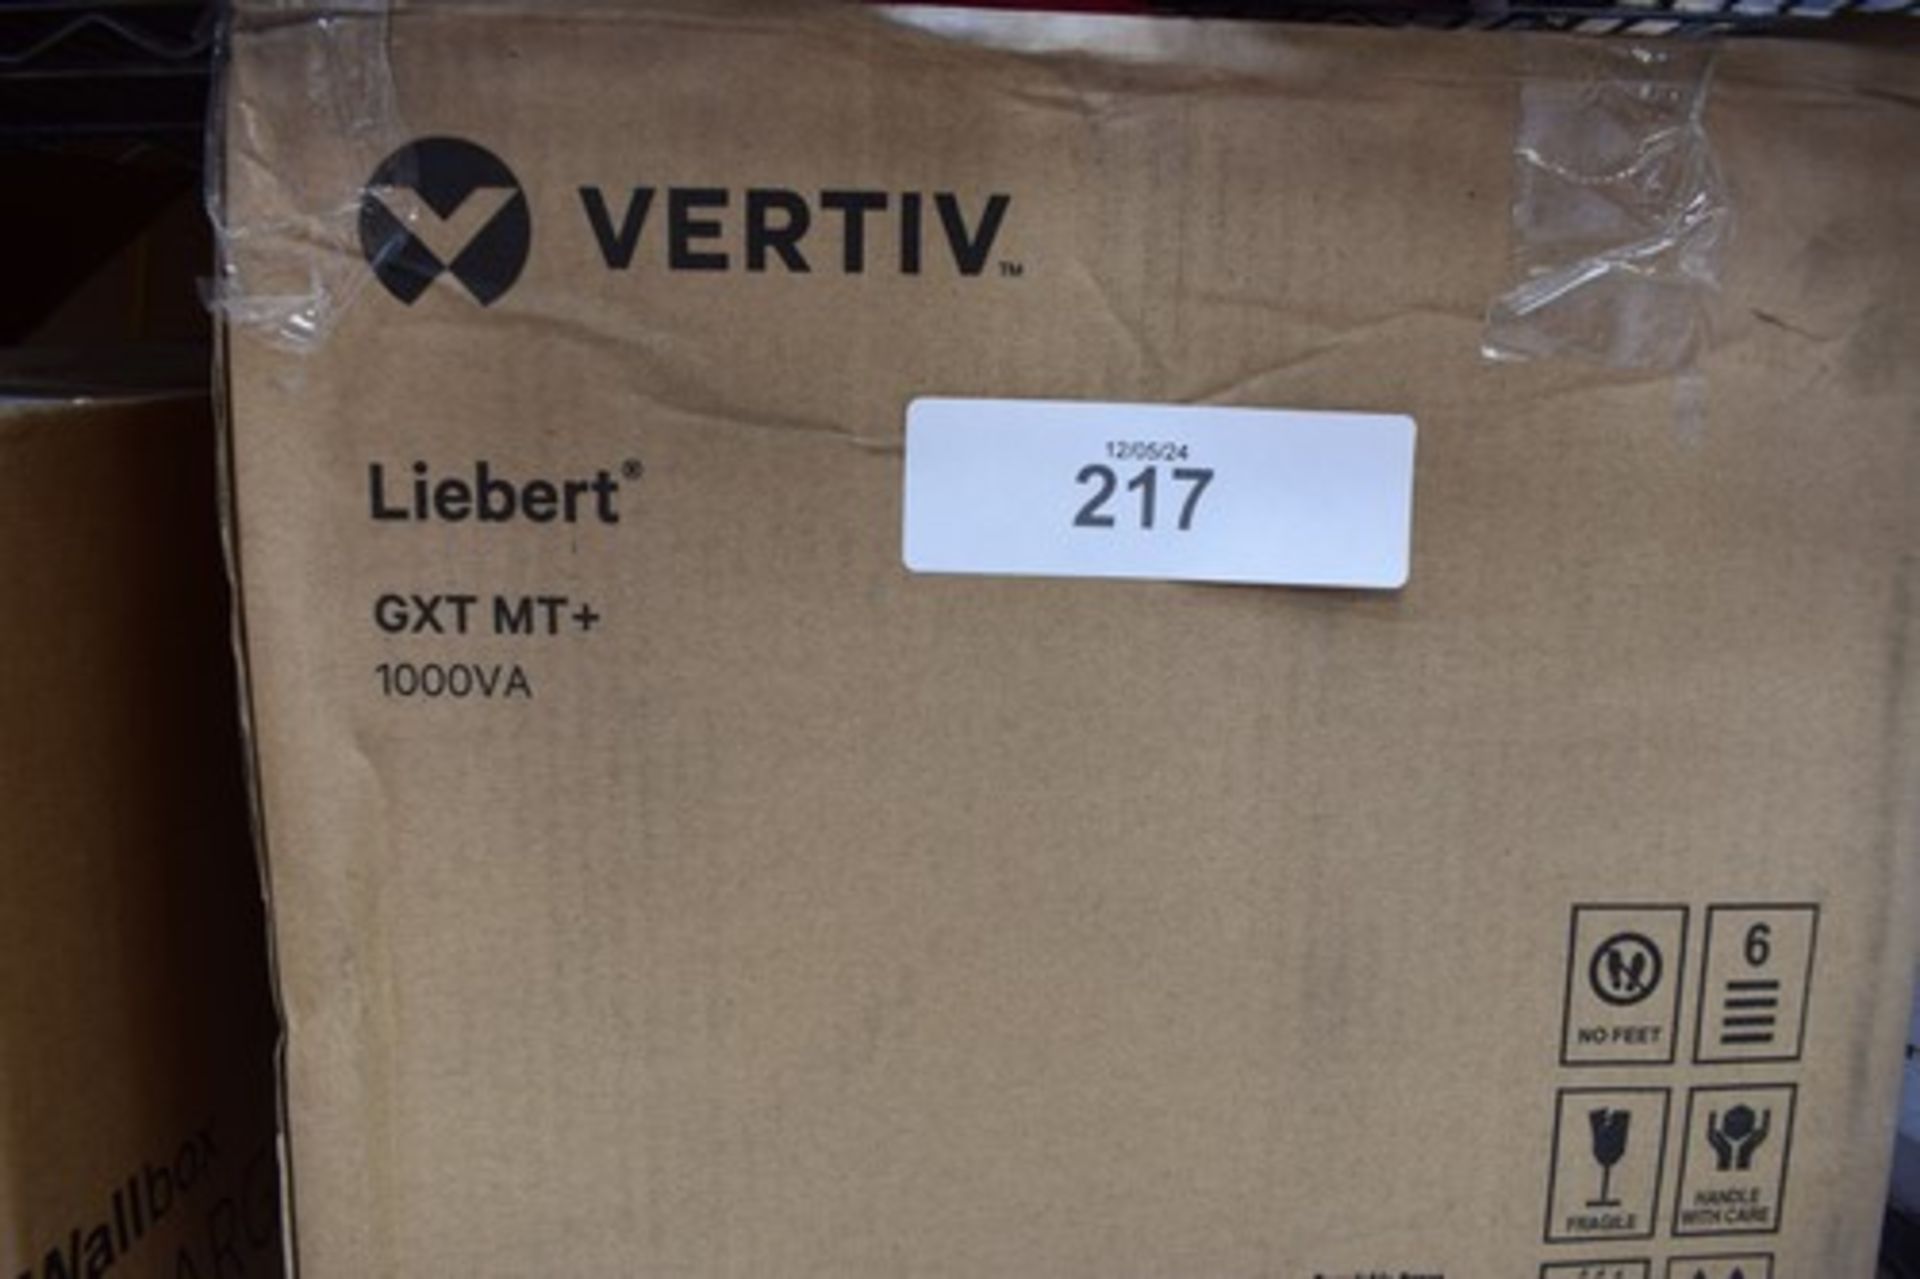 1 x Vertiv Liebert GXT MT= 1000VA unit mover - New in box (ES14)